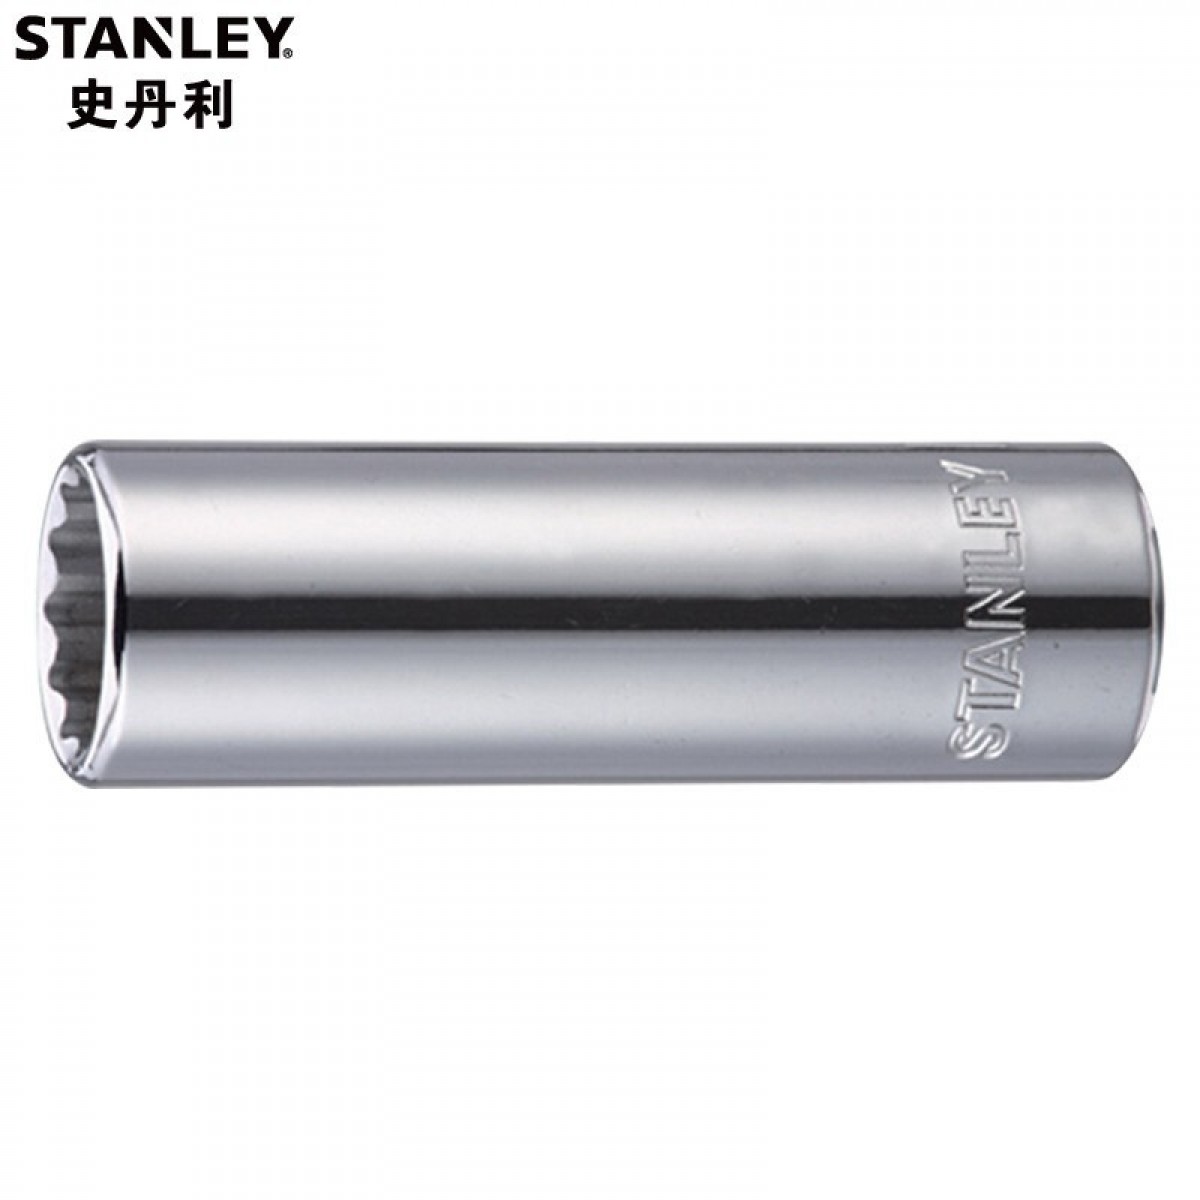 史丹利 96-375-1-22 12.5MM系列公制12角长套筒24mm